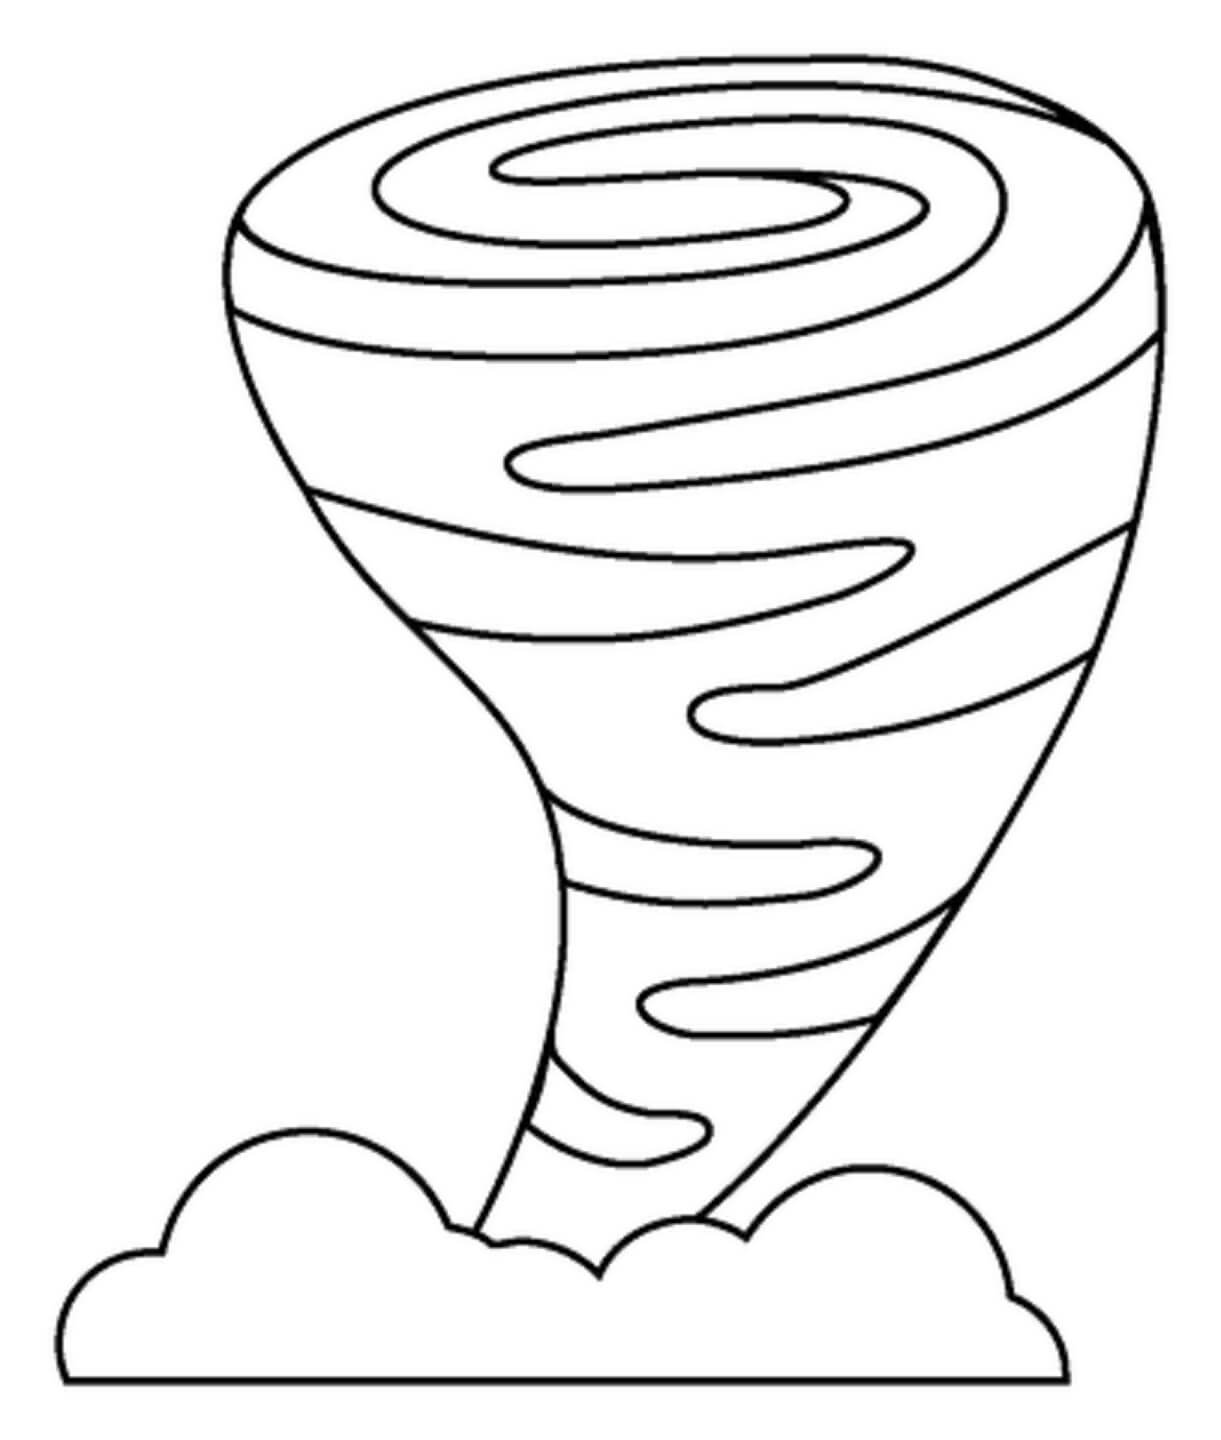 Tornado-emoji